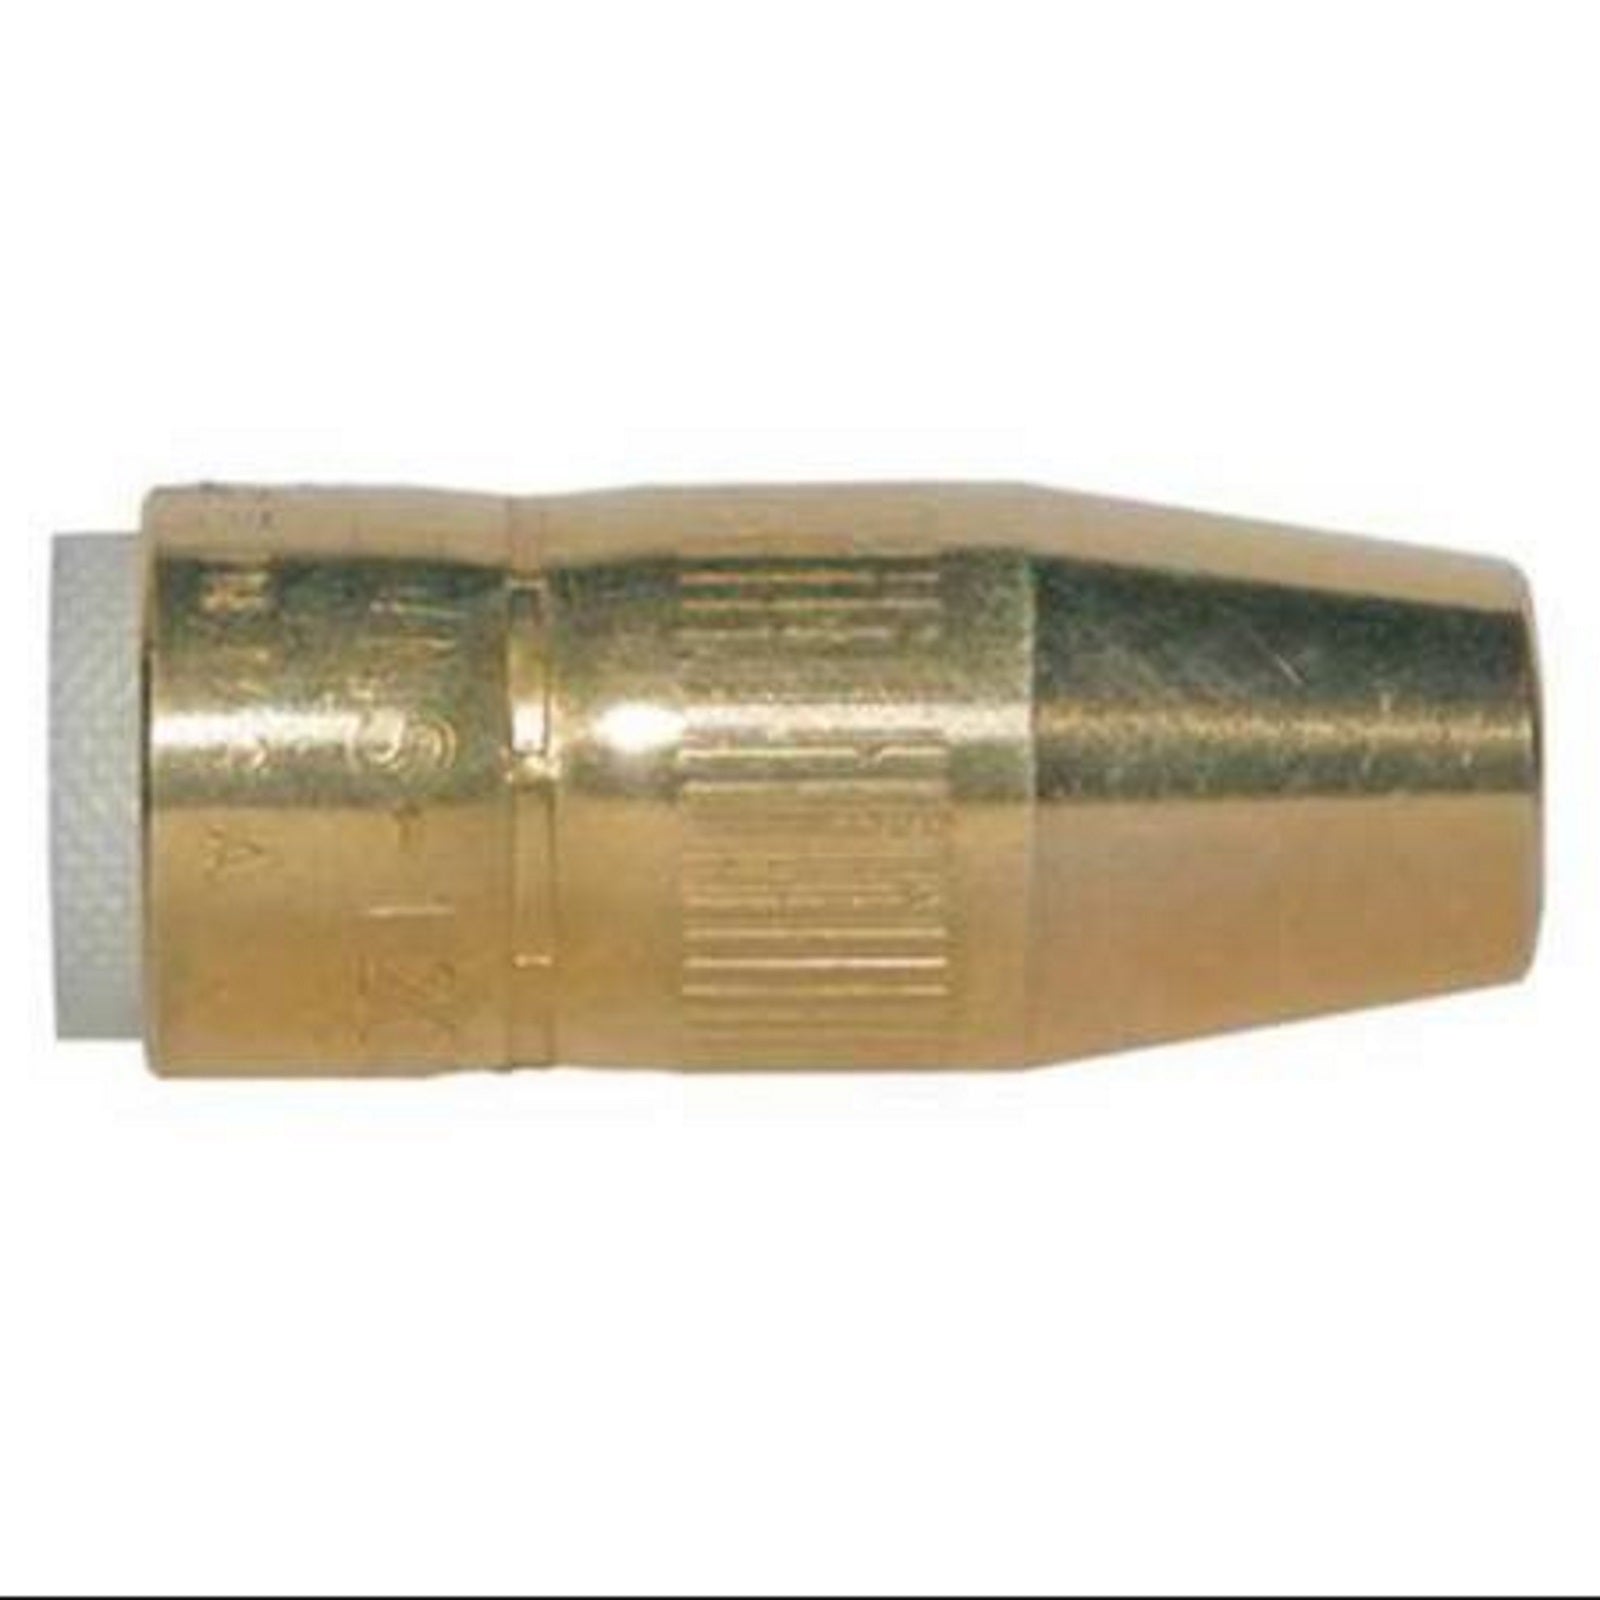 Bernard 1/2" Flush Brass Centerfire Nozzle (NS-1200B)